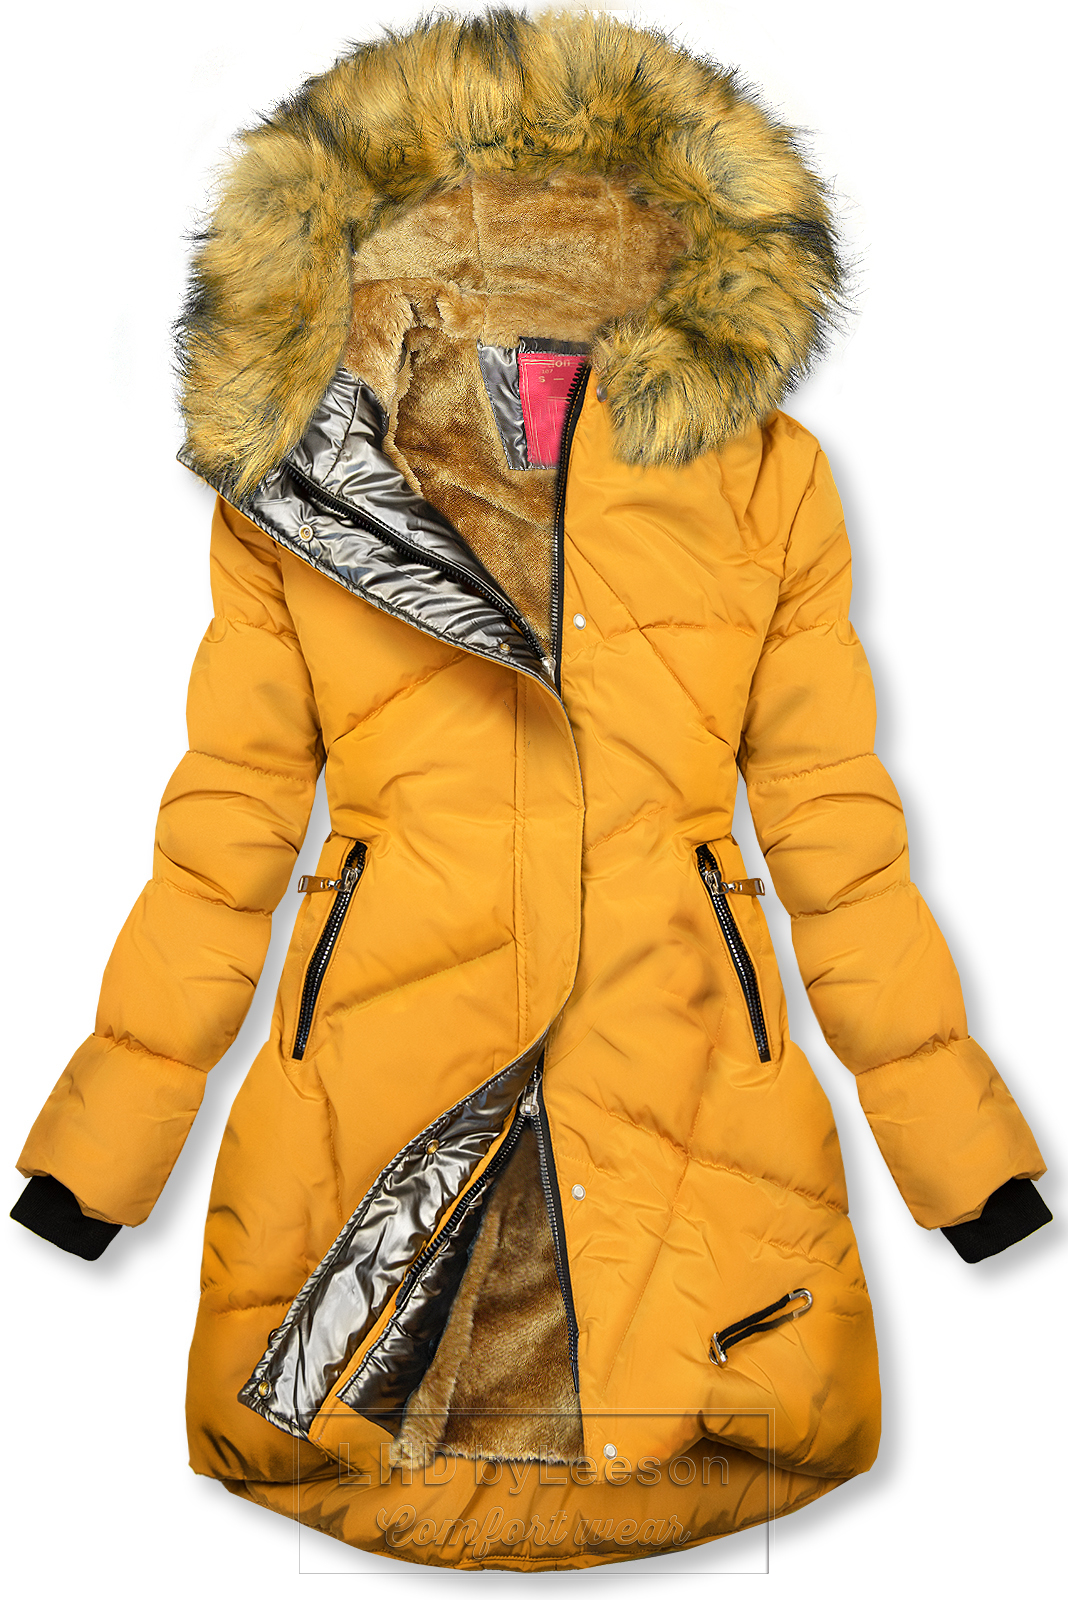 Żółta/karmelowa kurtka zimowa ze srebrnym obszyciem